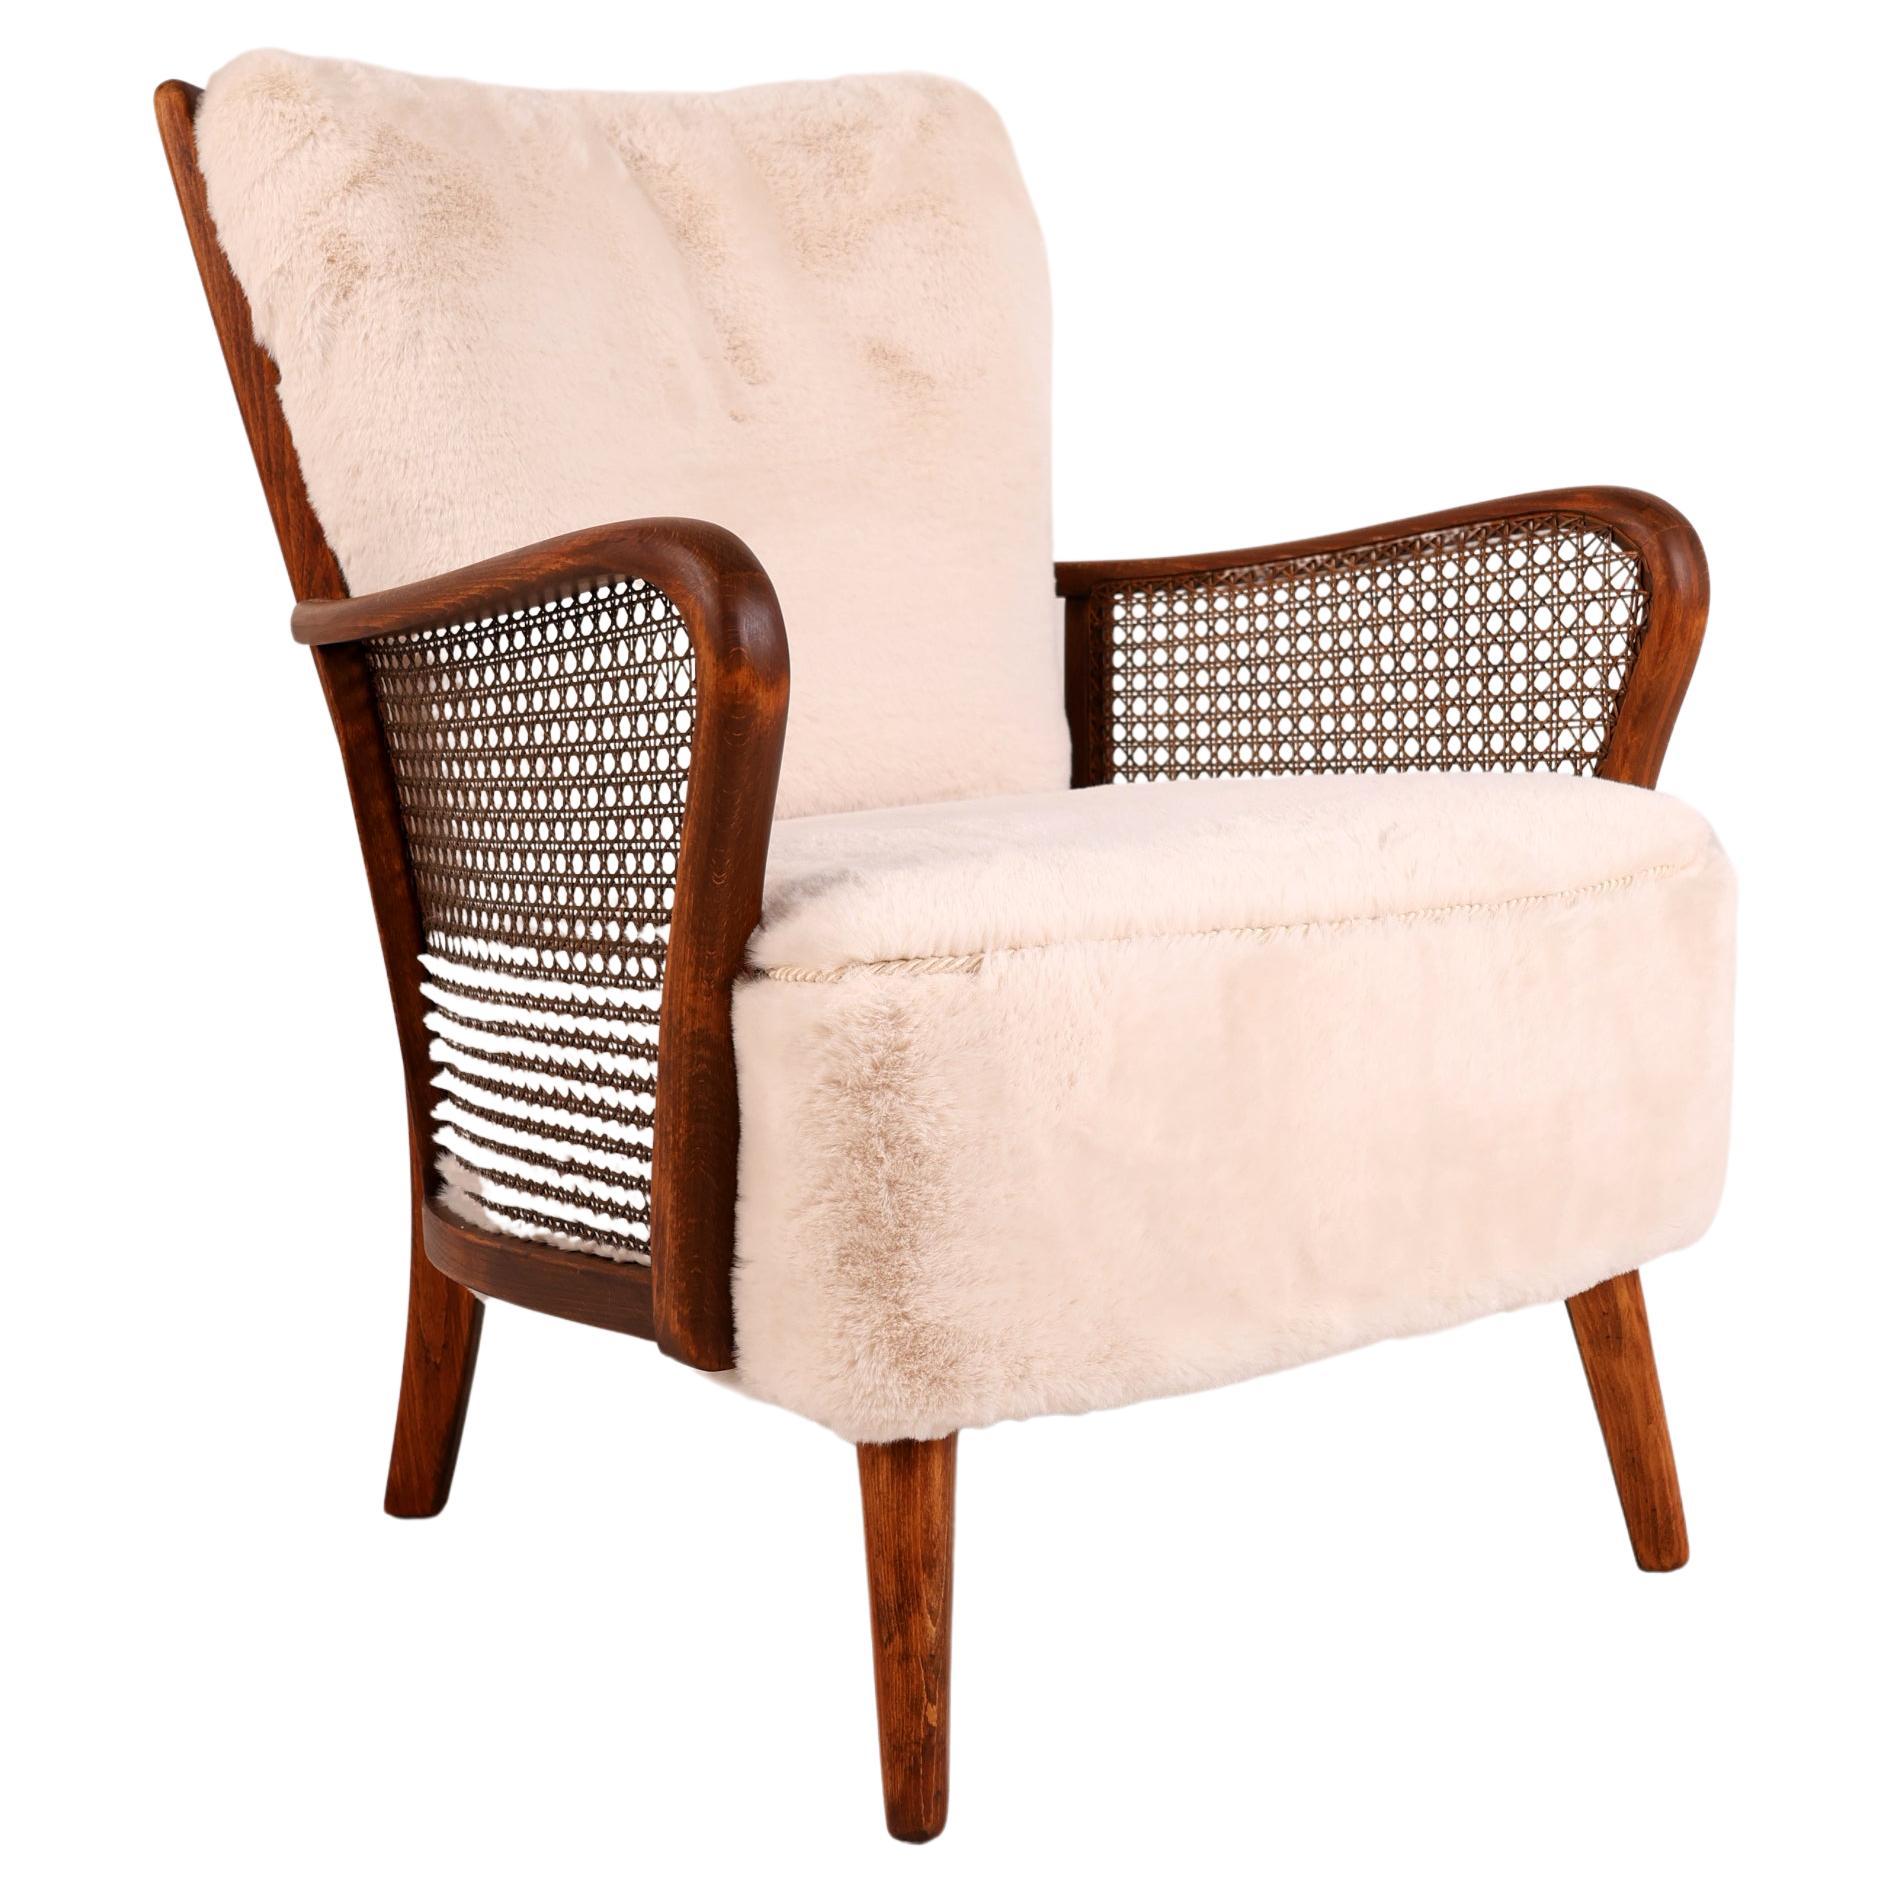 Loungesessel aus der Mitte des 20. Jahrhunderts aus Rattan

Wir präsentieren einen fantastischen Sessel aus den 1950er Jahren, der fachmännisch aus Buche gefertigt und sorgfältig neu gepolstert wurde. 

Dieser bequeme Stuhl passt zu vielen